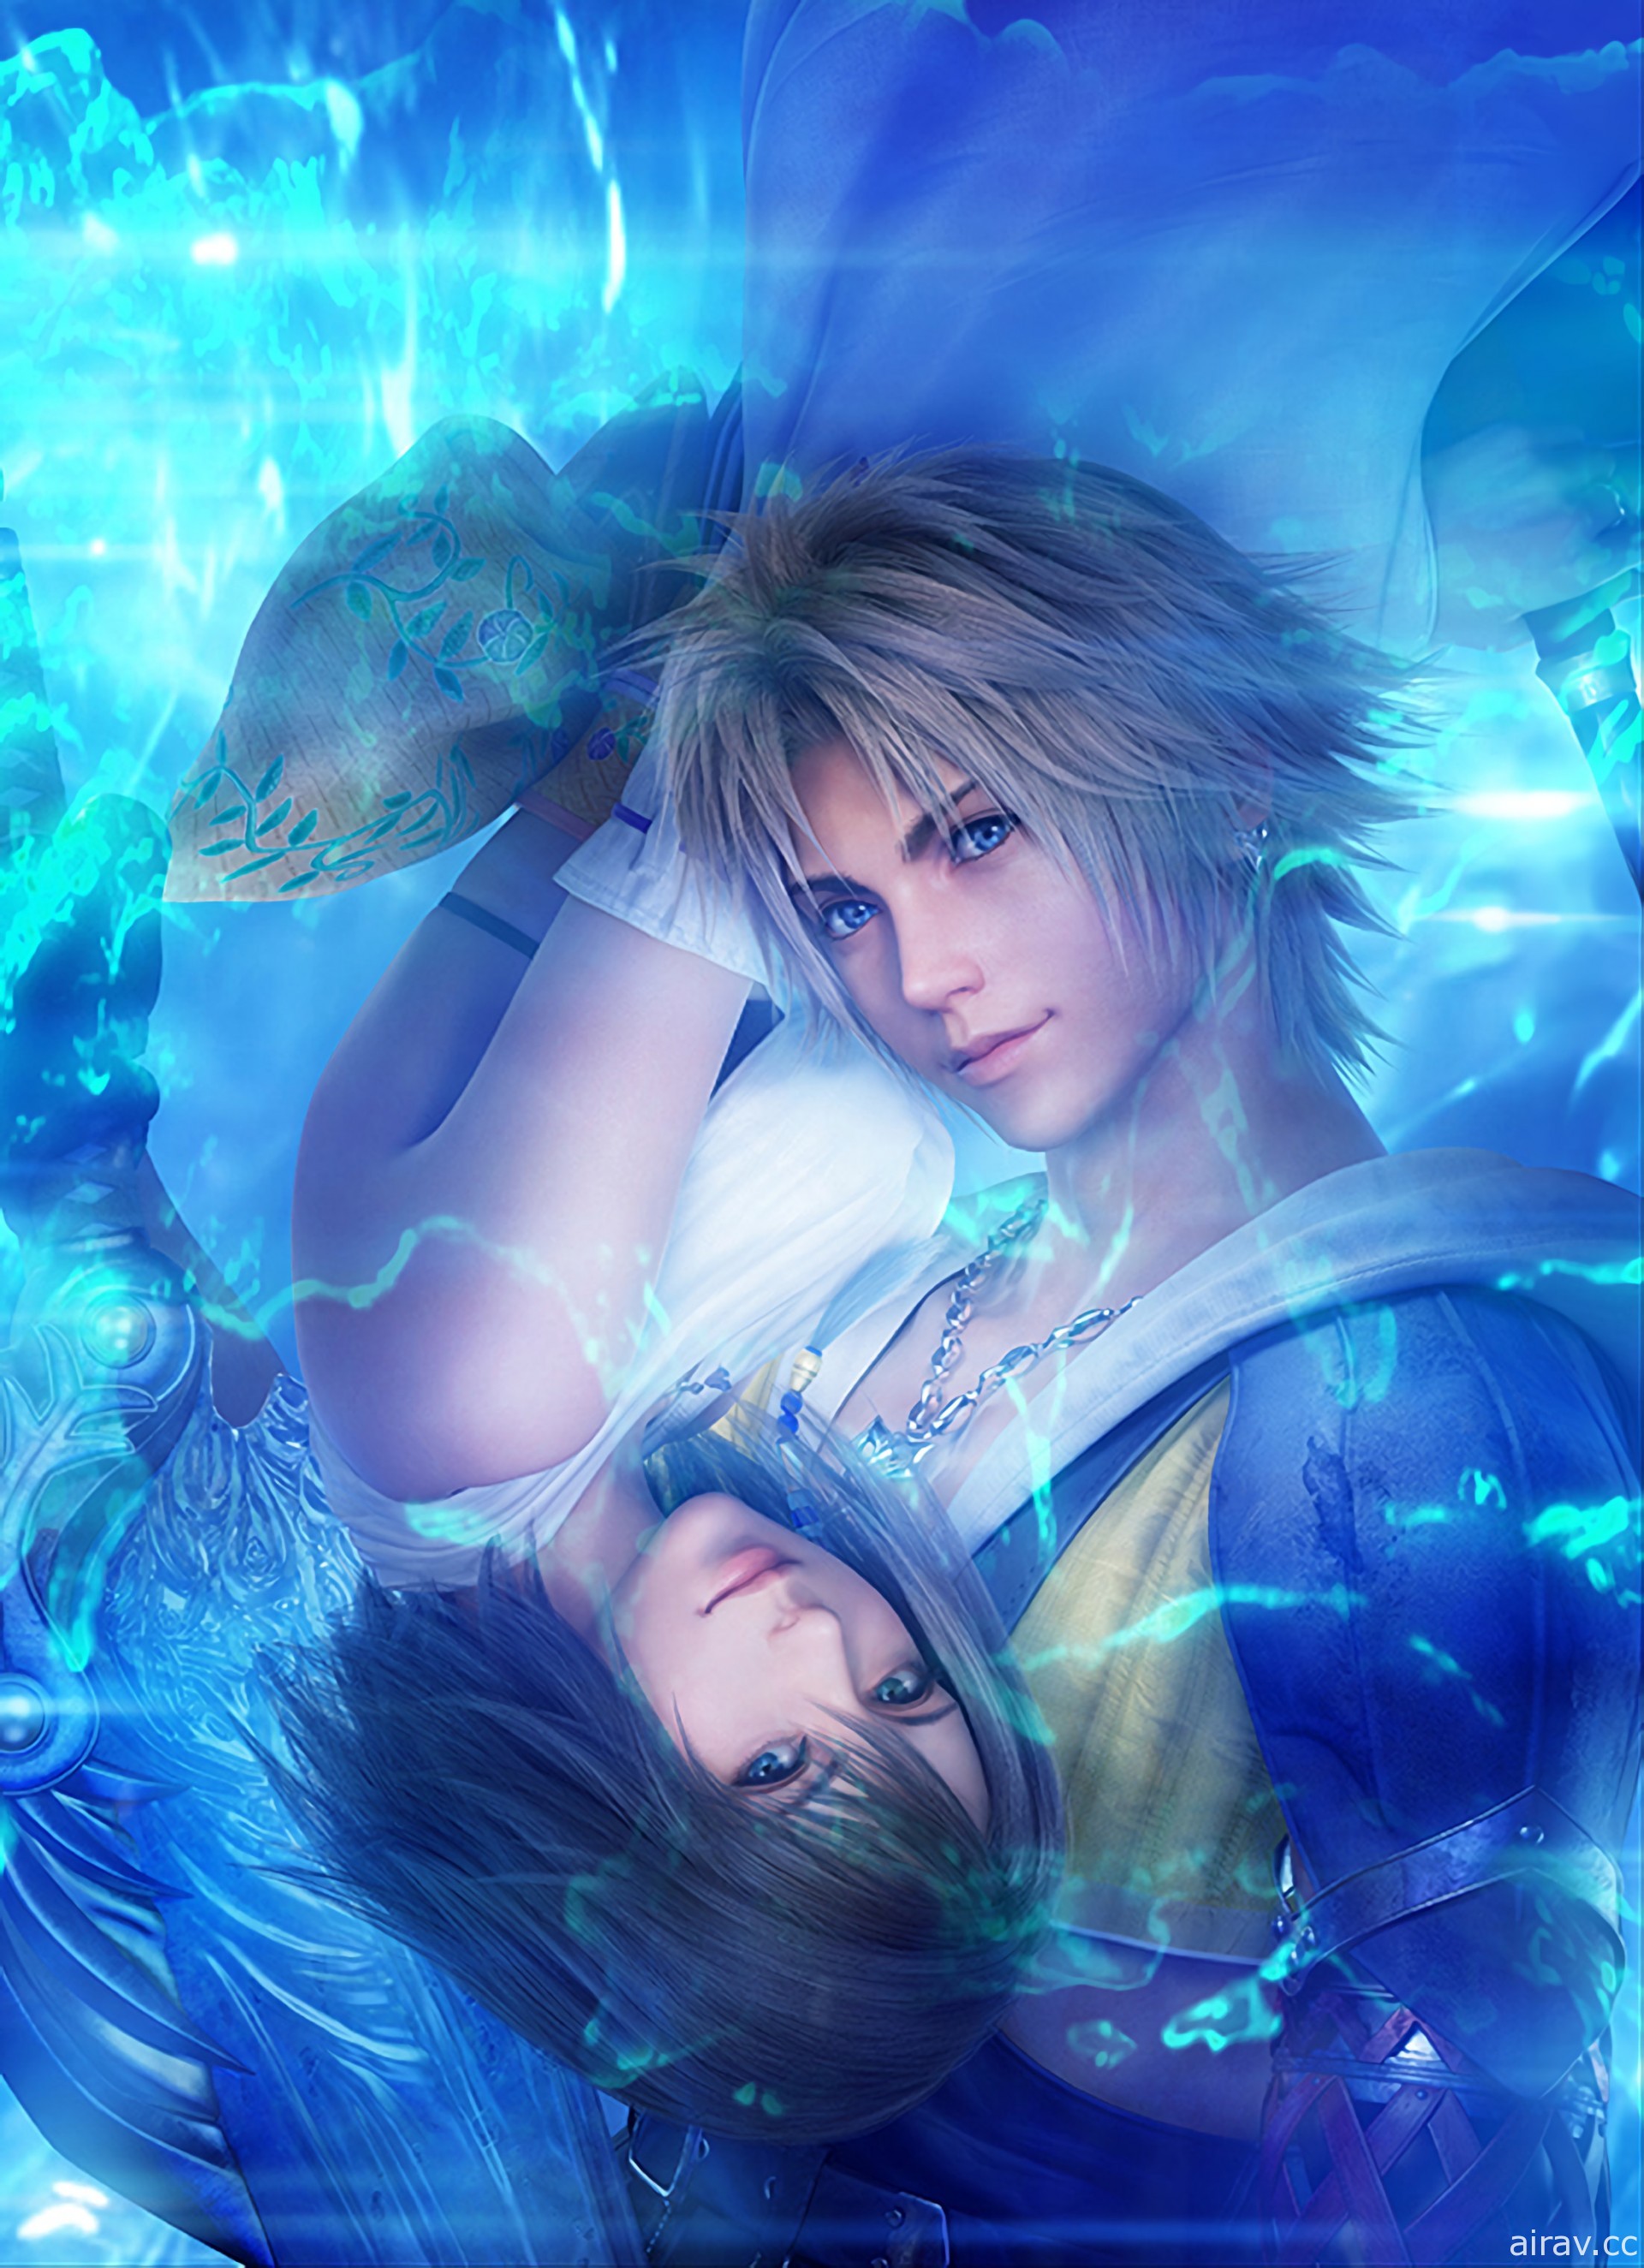 《Final Fantasy X》迎接問世 20 周年 一段如夢似幻的淒美愛情故事